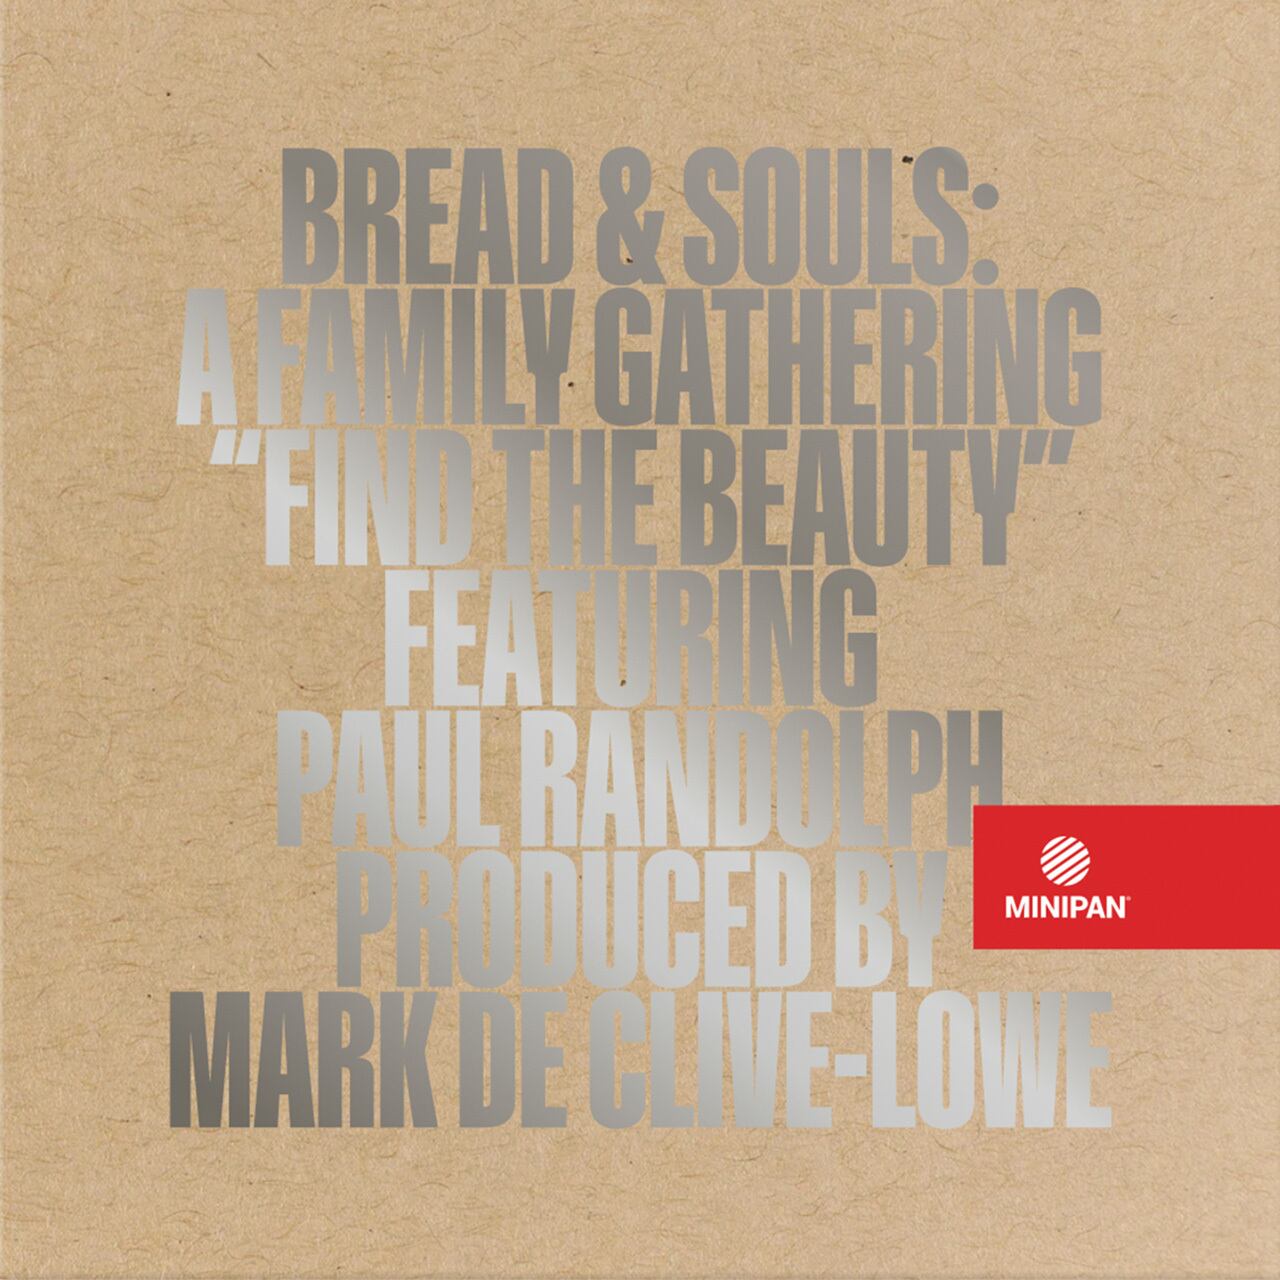 〈残り1点〉【7"】Bread & Souls (Prod. By Mark De Clive-Lowe) - Find The Beauty Feat. Paul Randolph